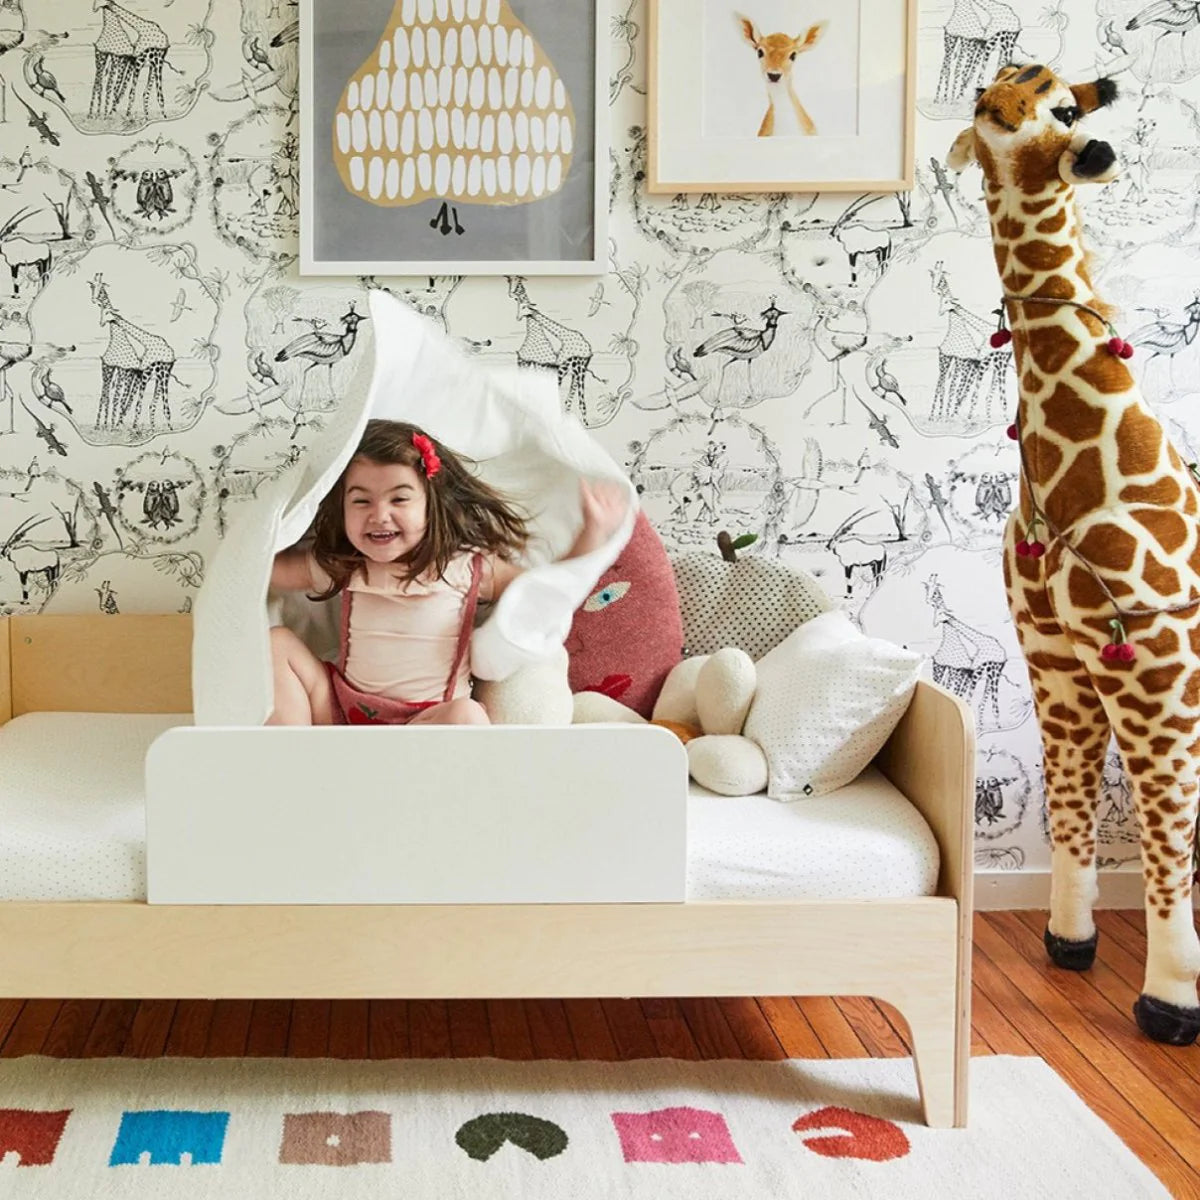 Comment choisir le meilleur lit évolutif pour votre enfant?